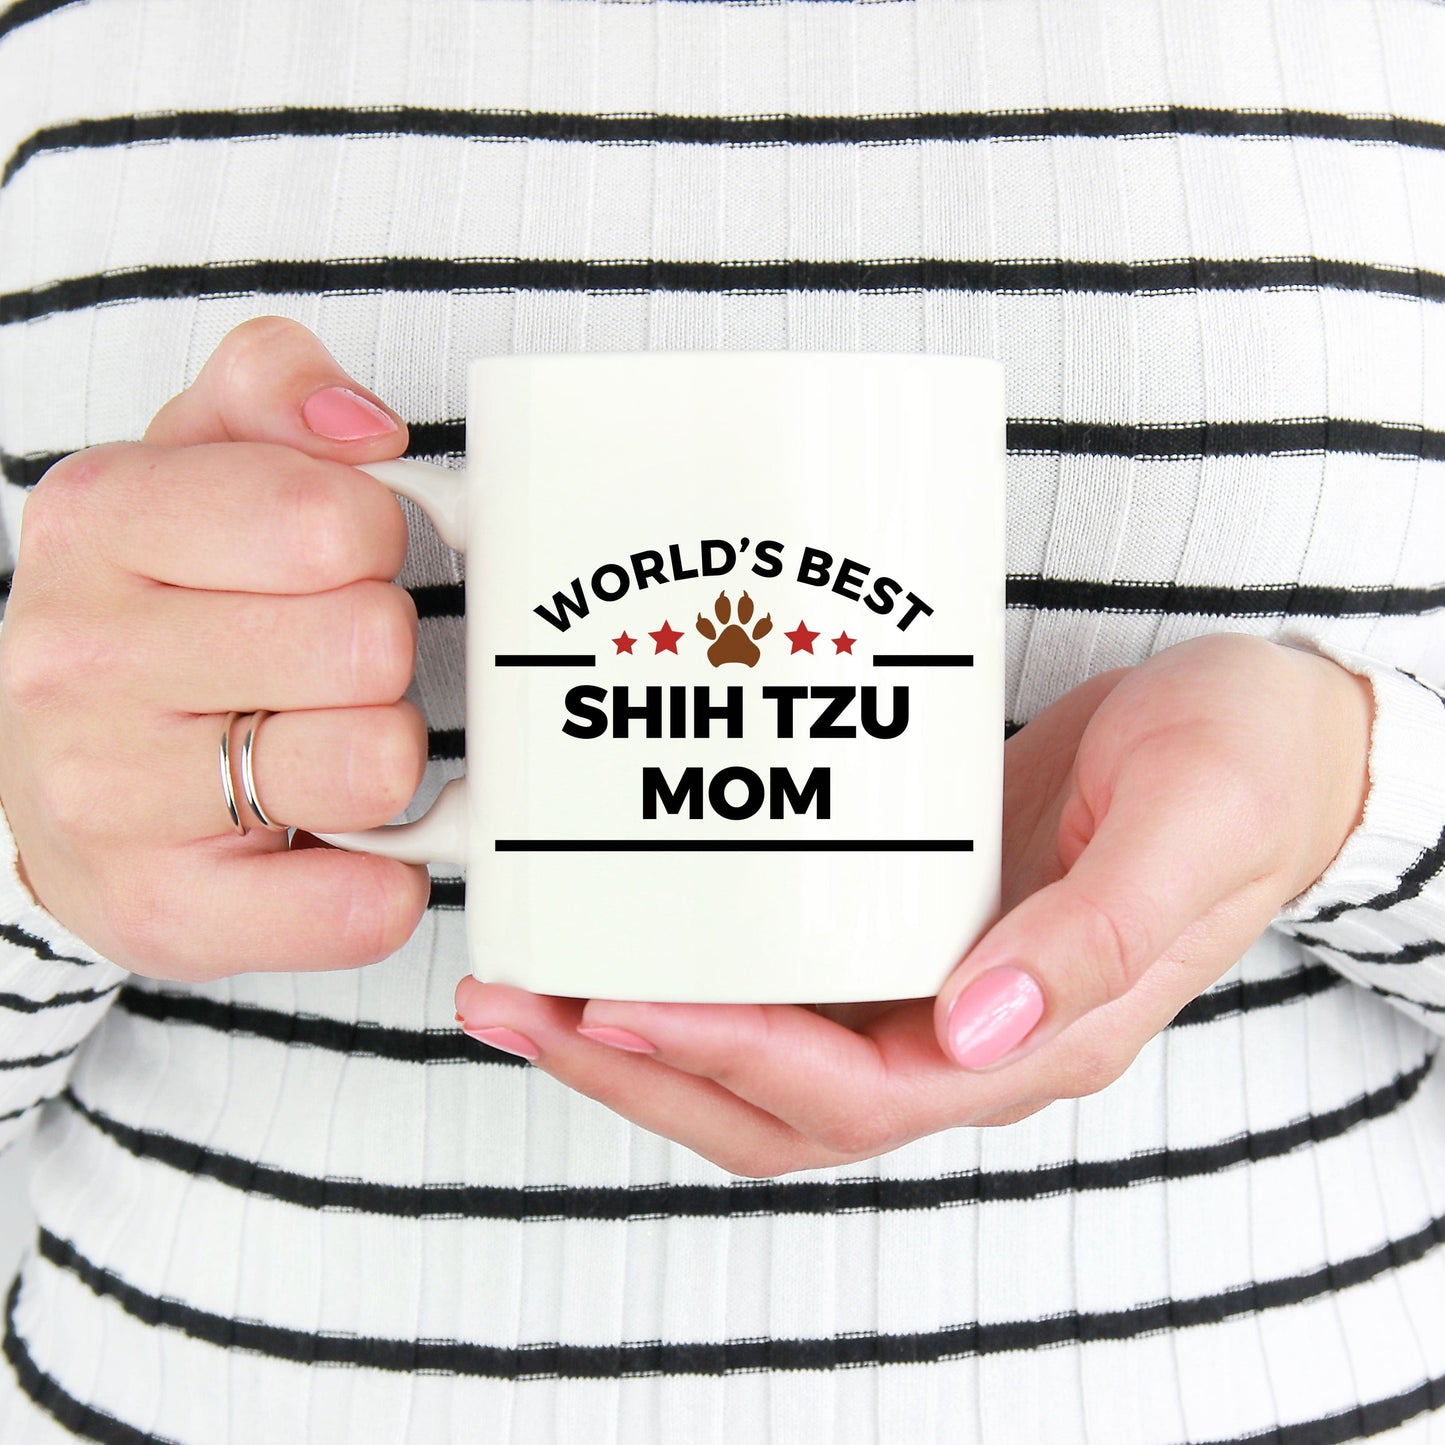 Shih Tzu Dog Mom Coffee Mug